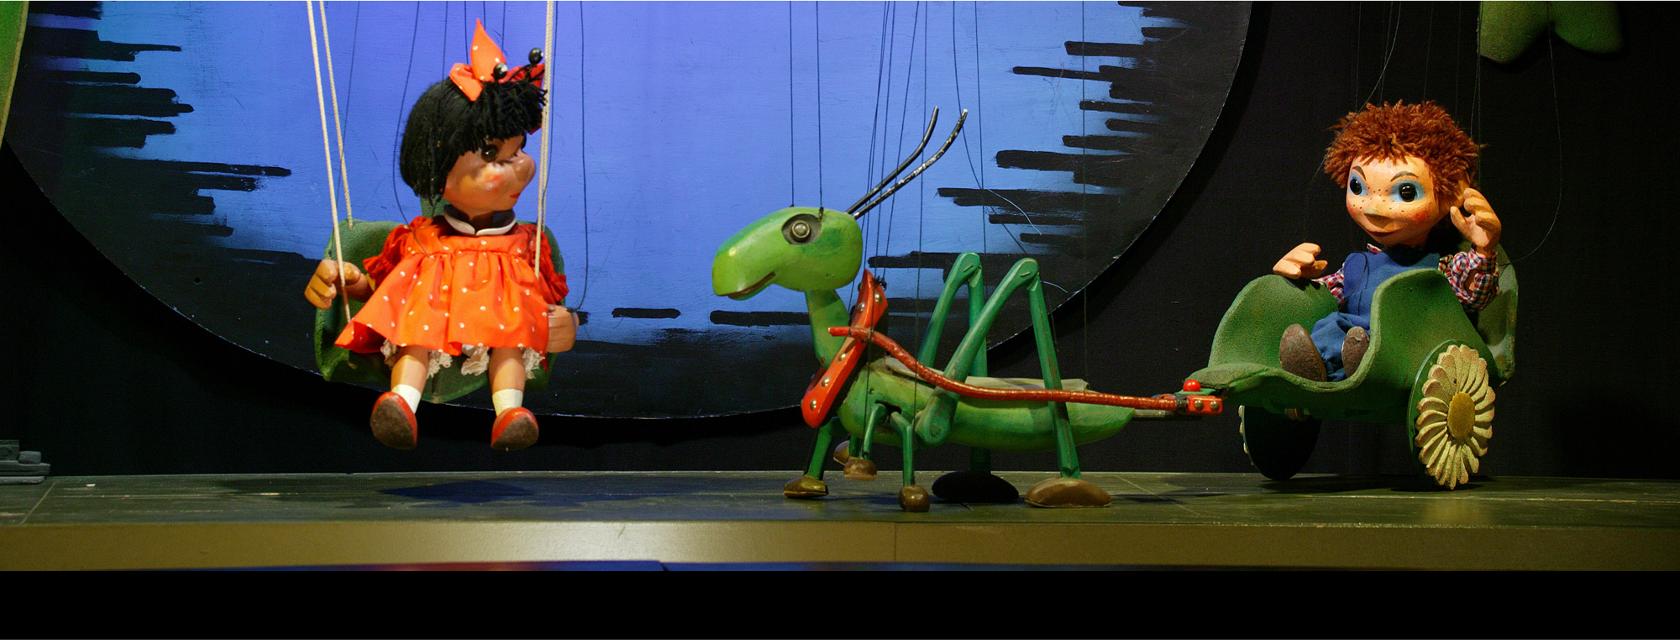 Das Marionettentheater “Die Holzköppe” spielt das bekannte Märchen “Käferchen Klärchen” im Spessart FORUM Bad Soden-Salmünster.